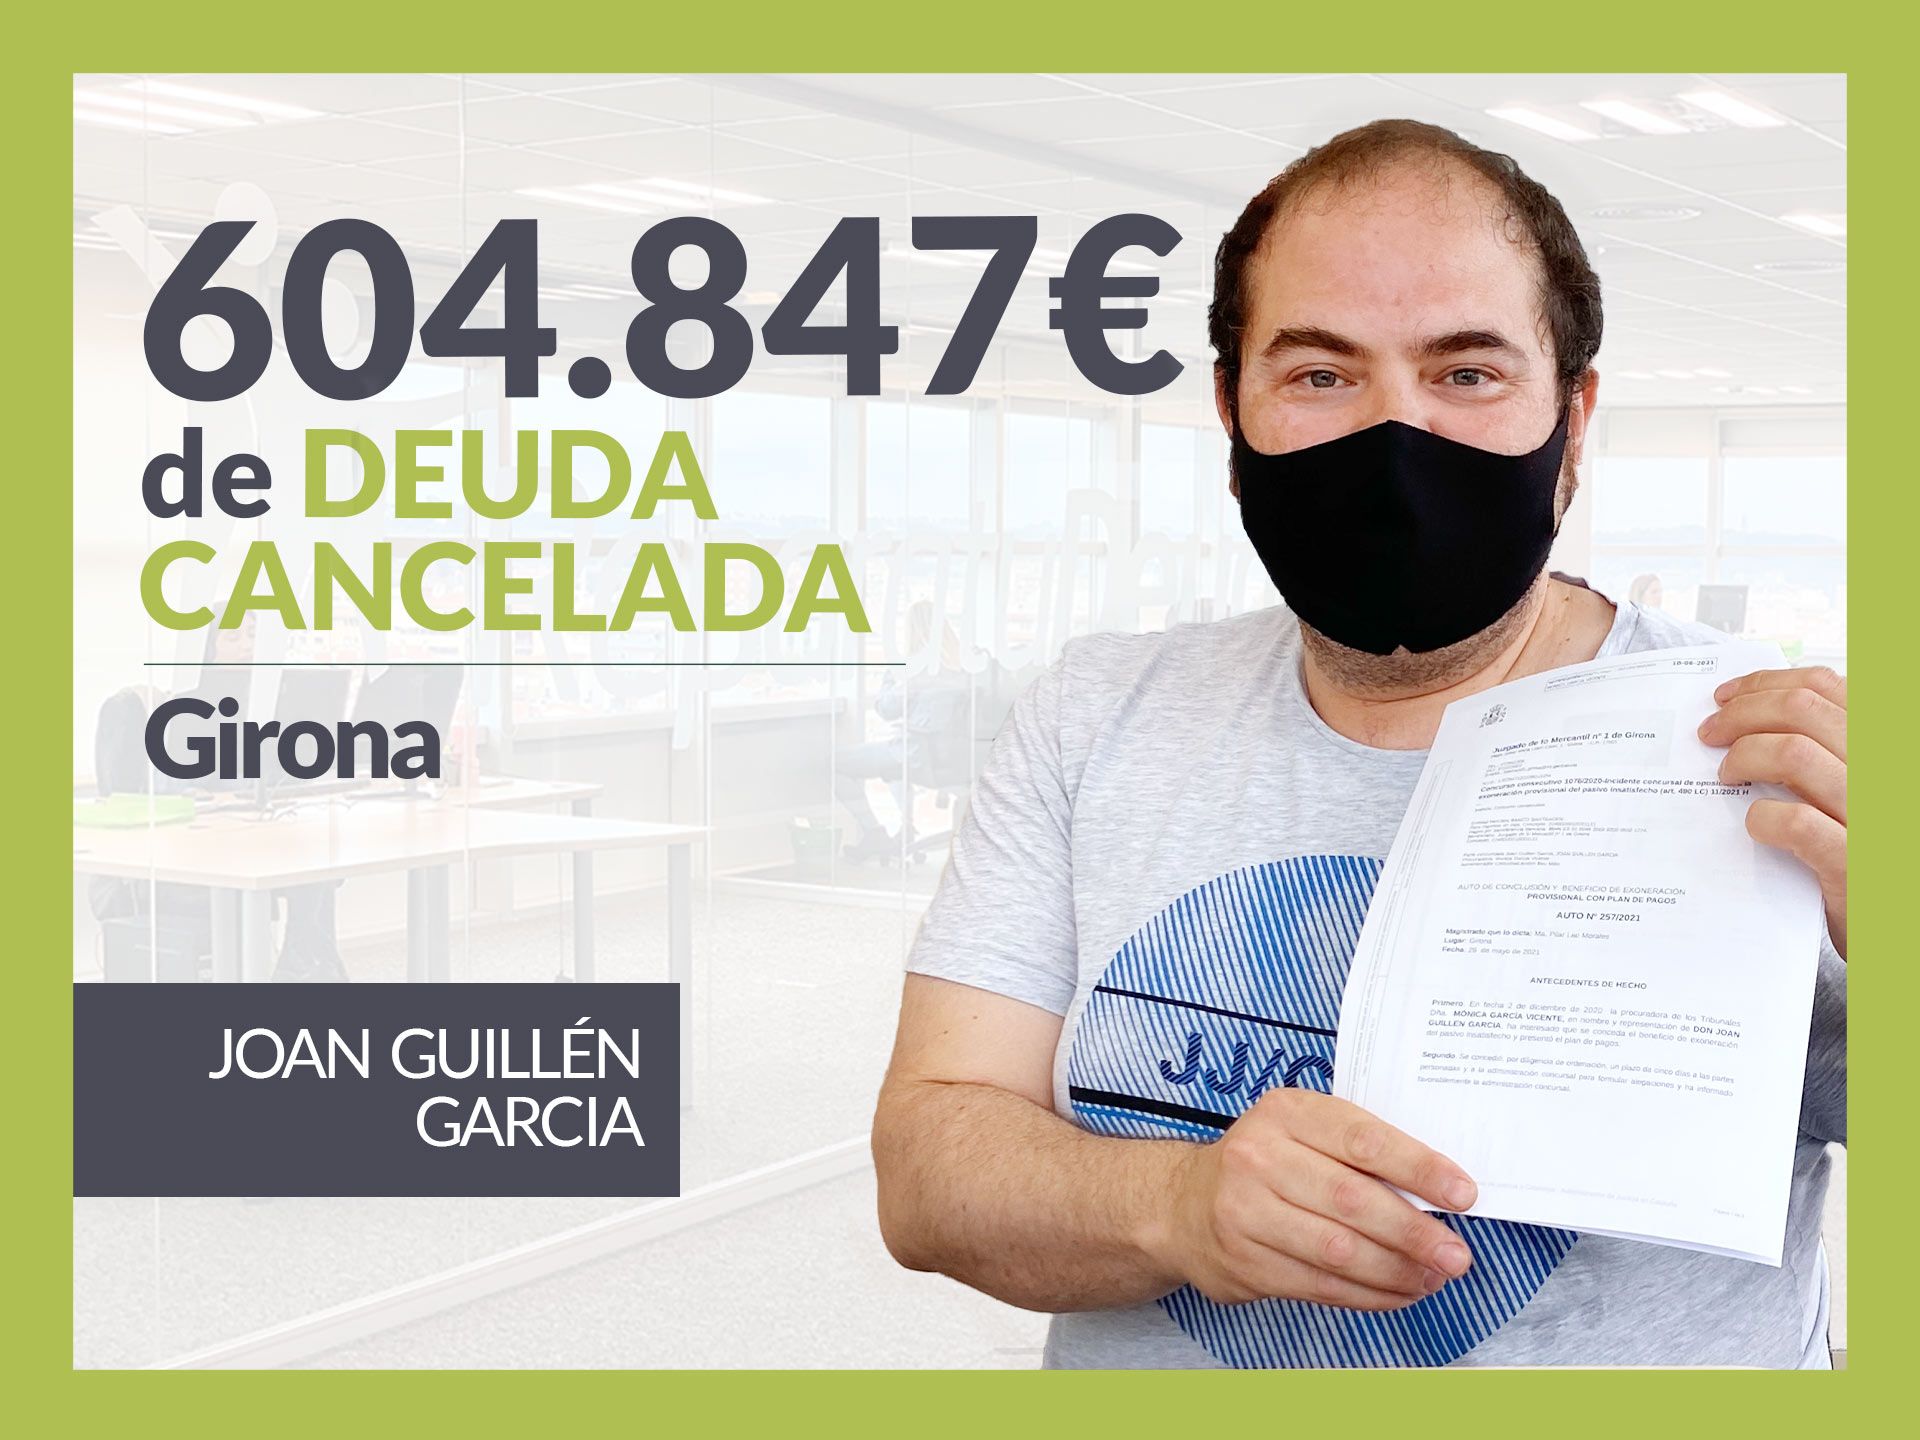 Repara tu Deuda Abogados cancela 604.847? en Girona con la Ley de Segunda Oportunidad